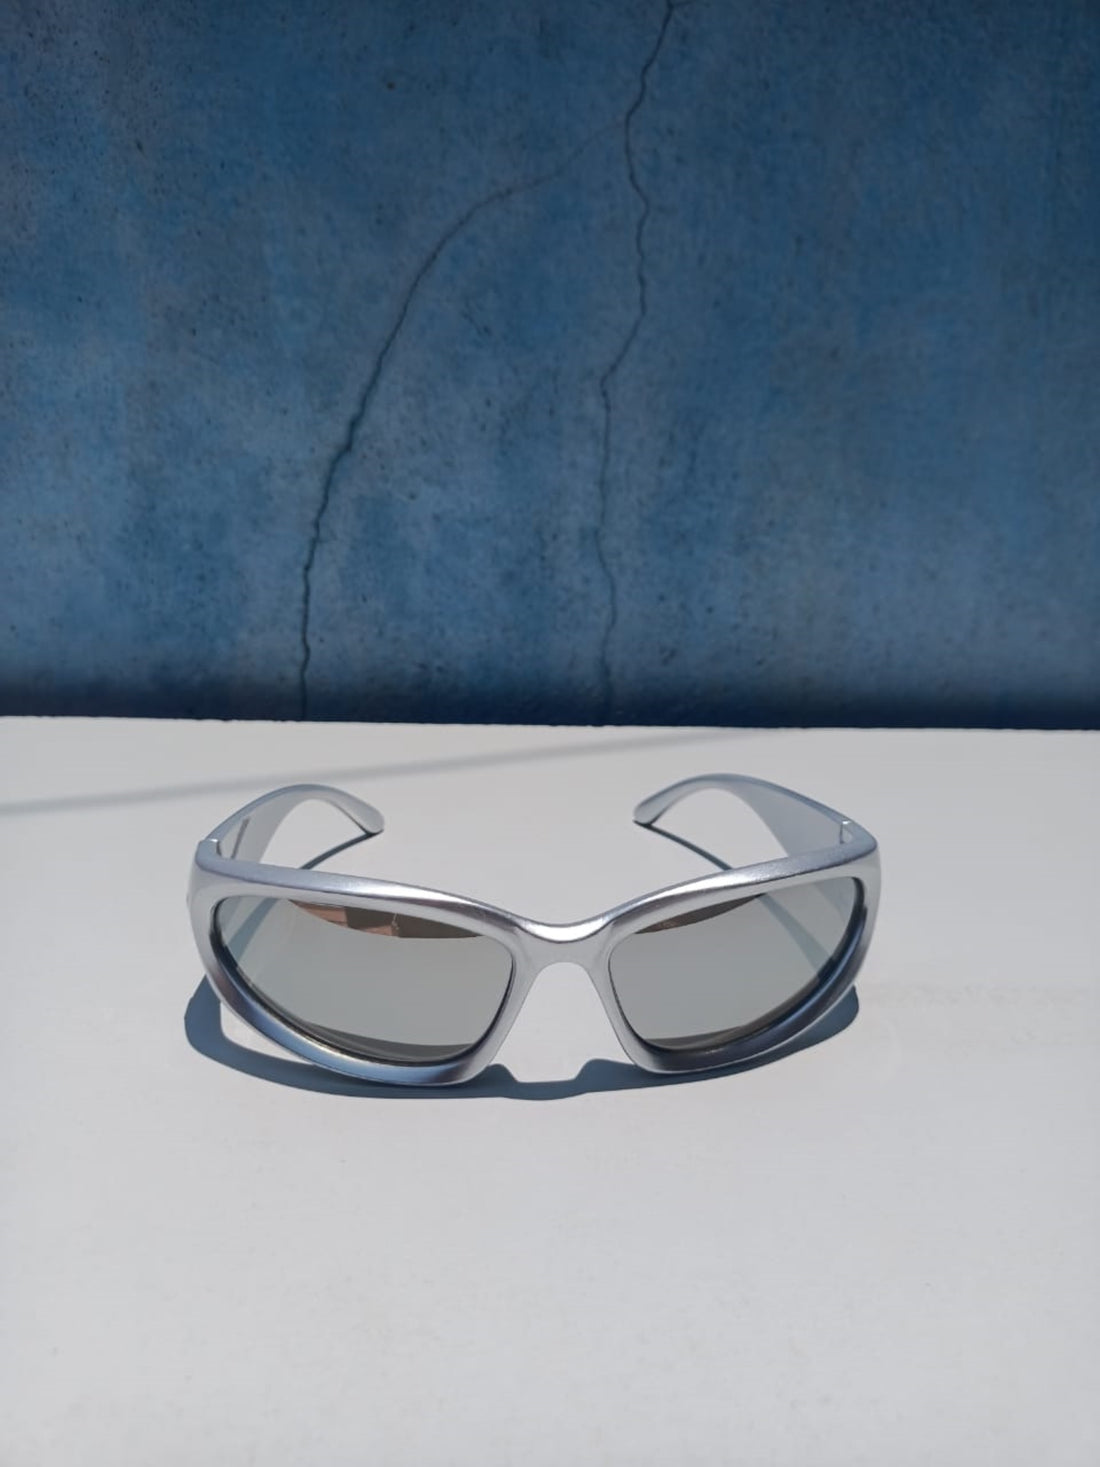 Blizzard - Plur Glasses (Silver-Reflective Glasses)